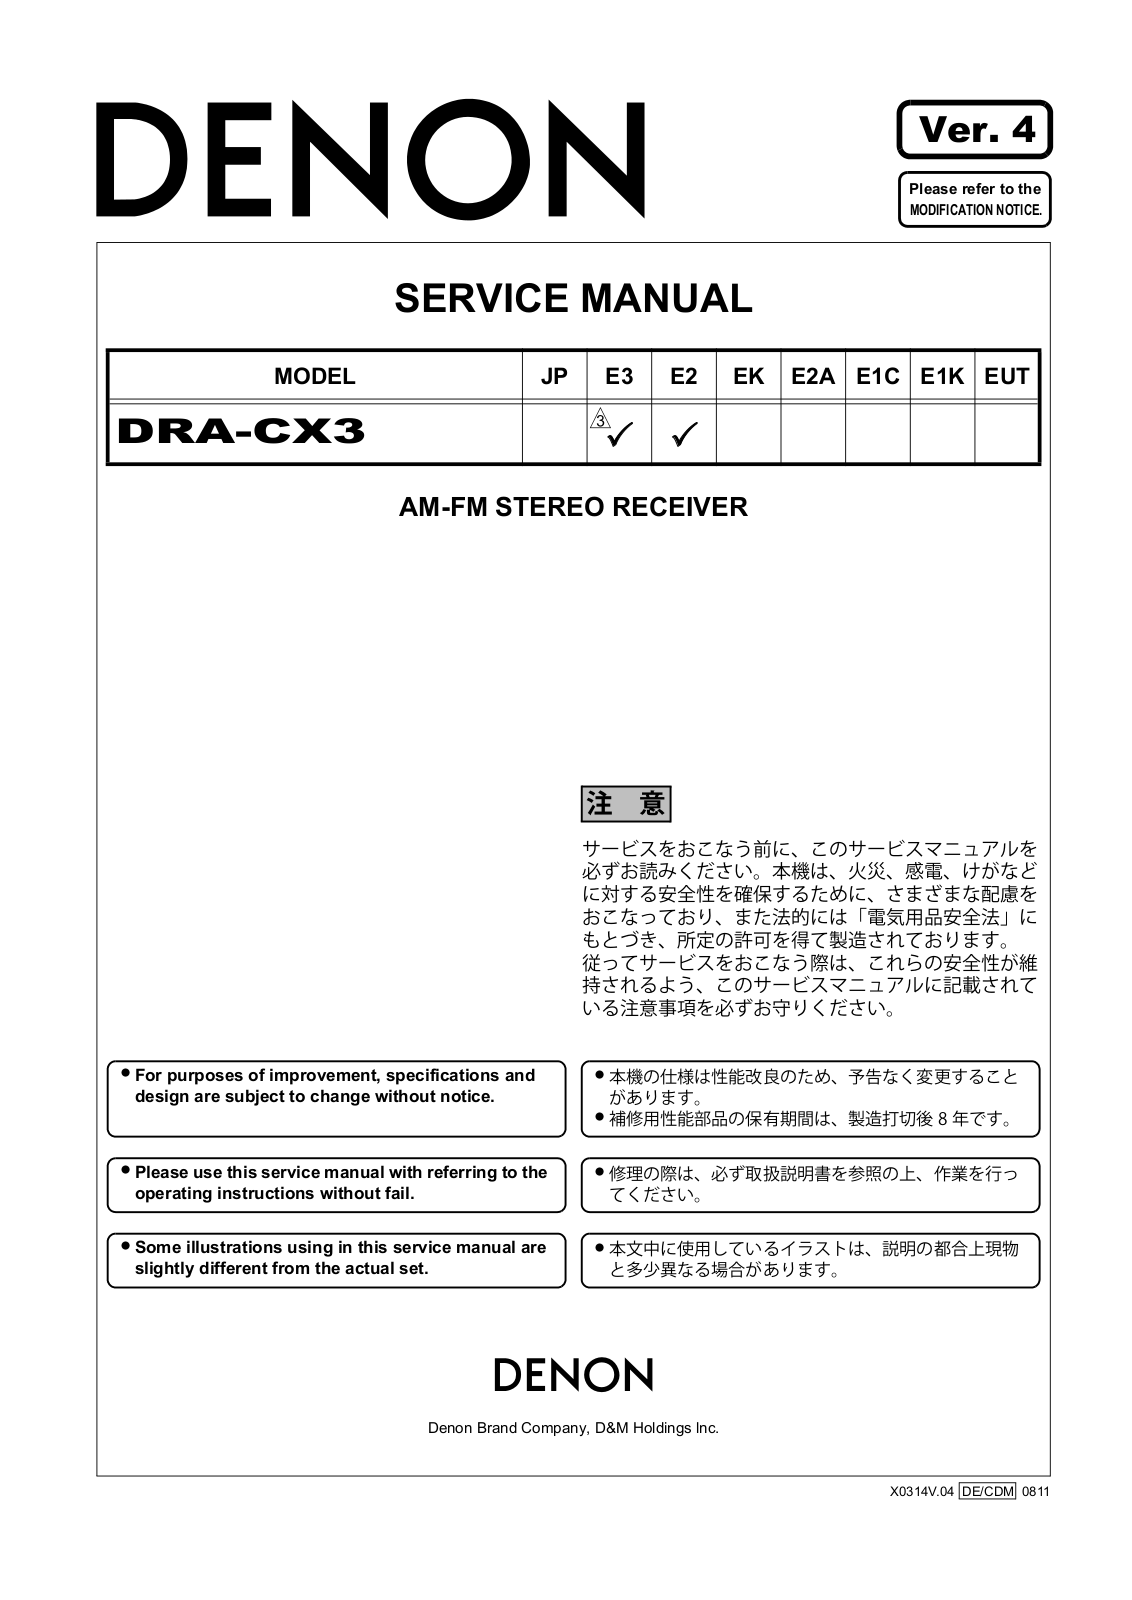 Denon DRA-CX3 Service Manual